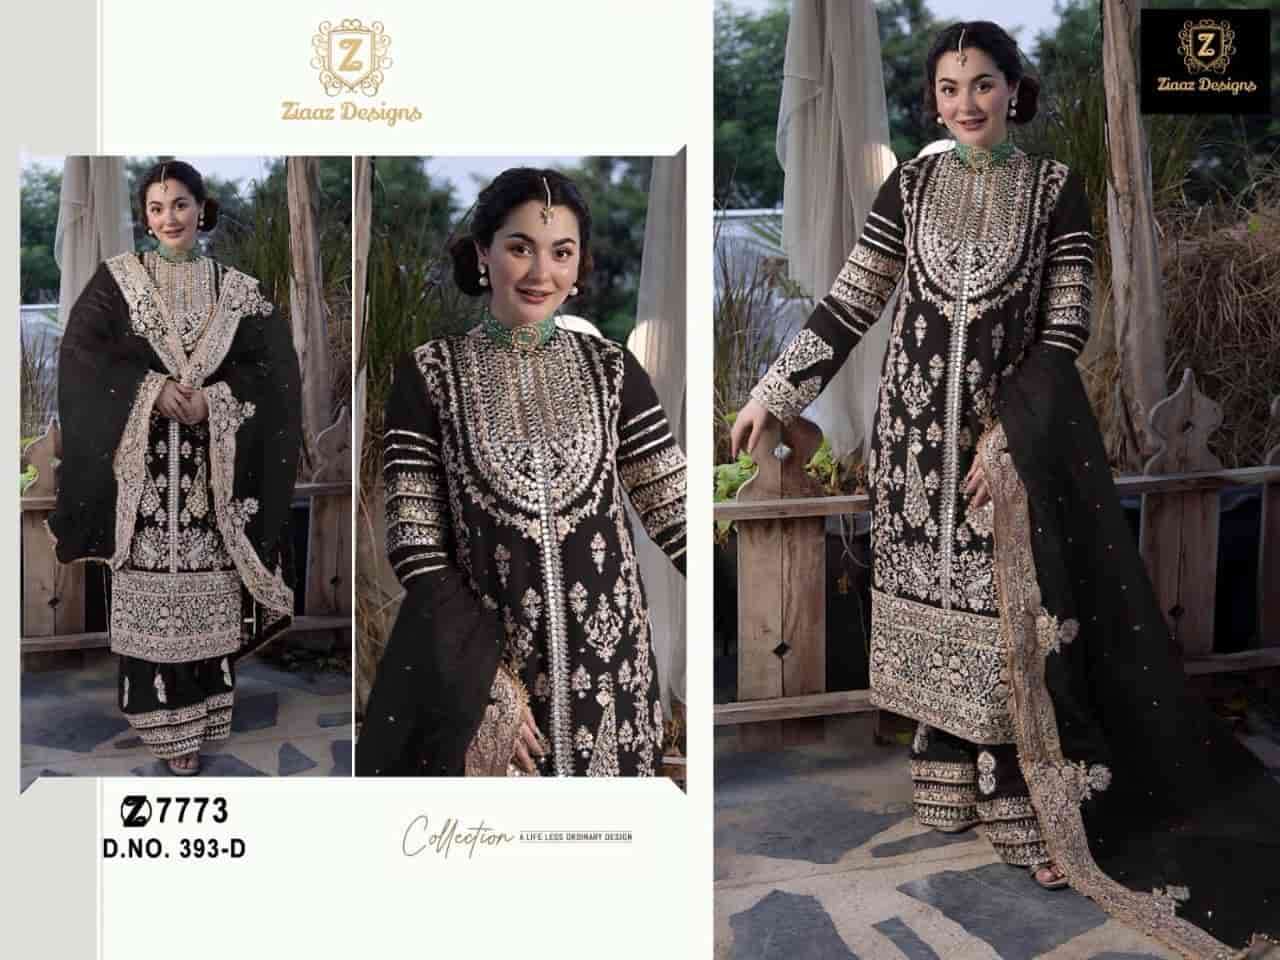 Ziaaz Designs 393 D Heavy Designer Style Pakistani Party Wear Suit Collection